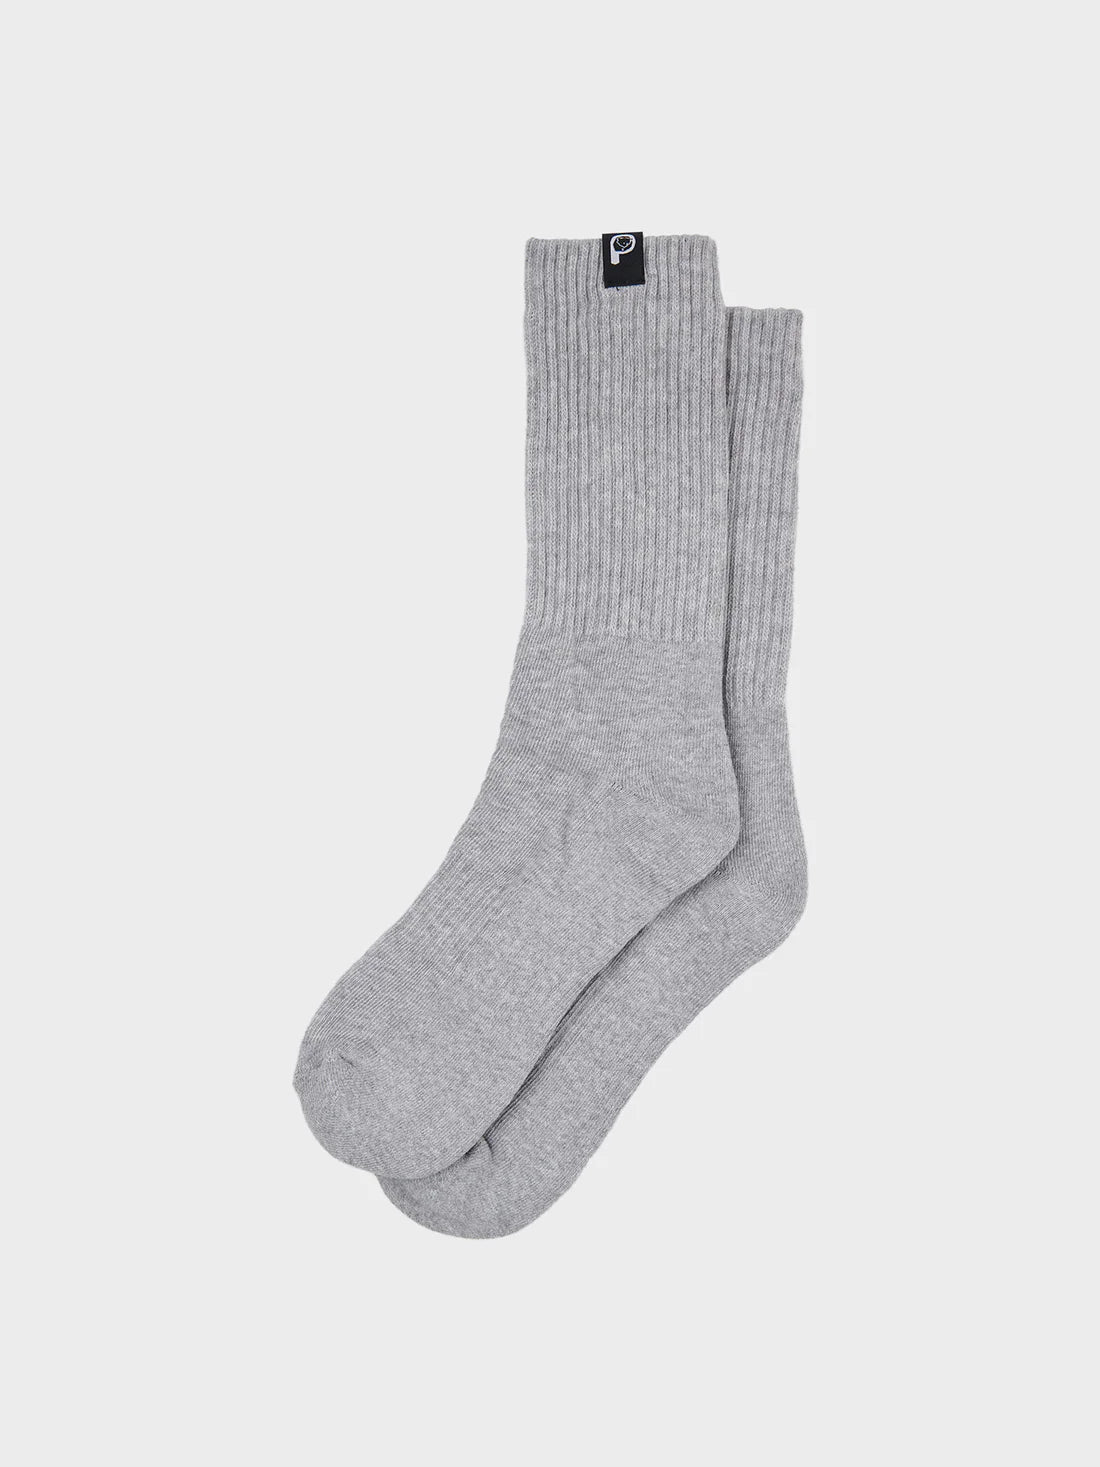 Penfield 2 Pack Socks - Vintage Grey Heather